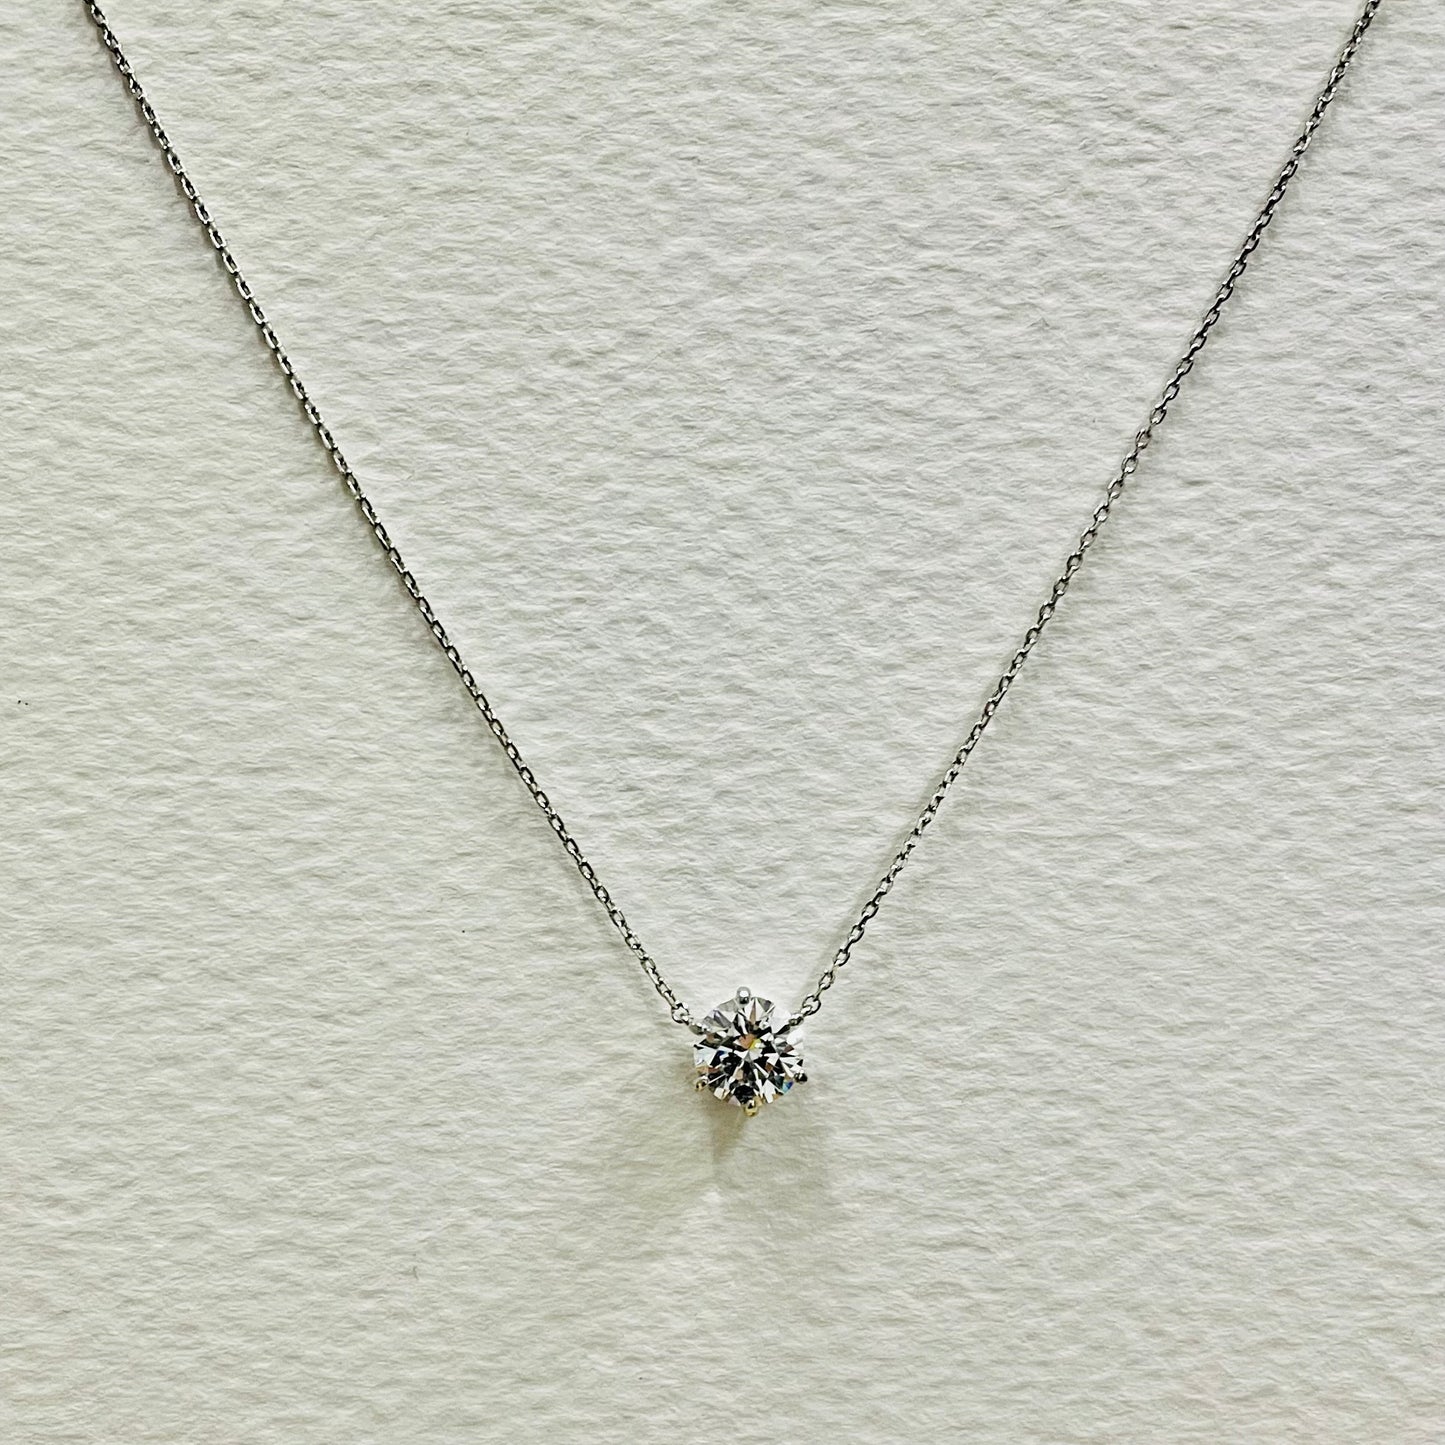 6. Diamante Necklace